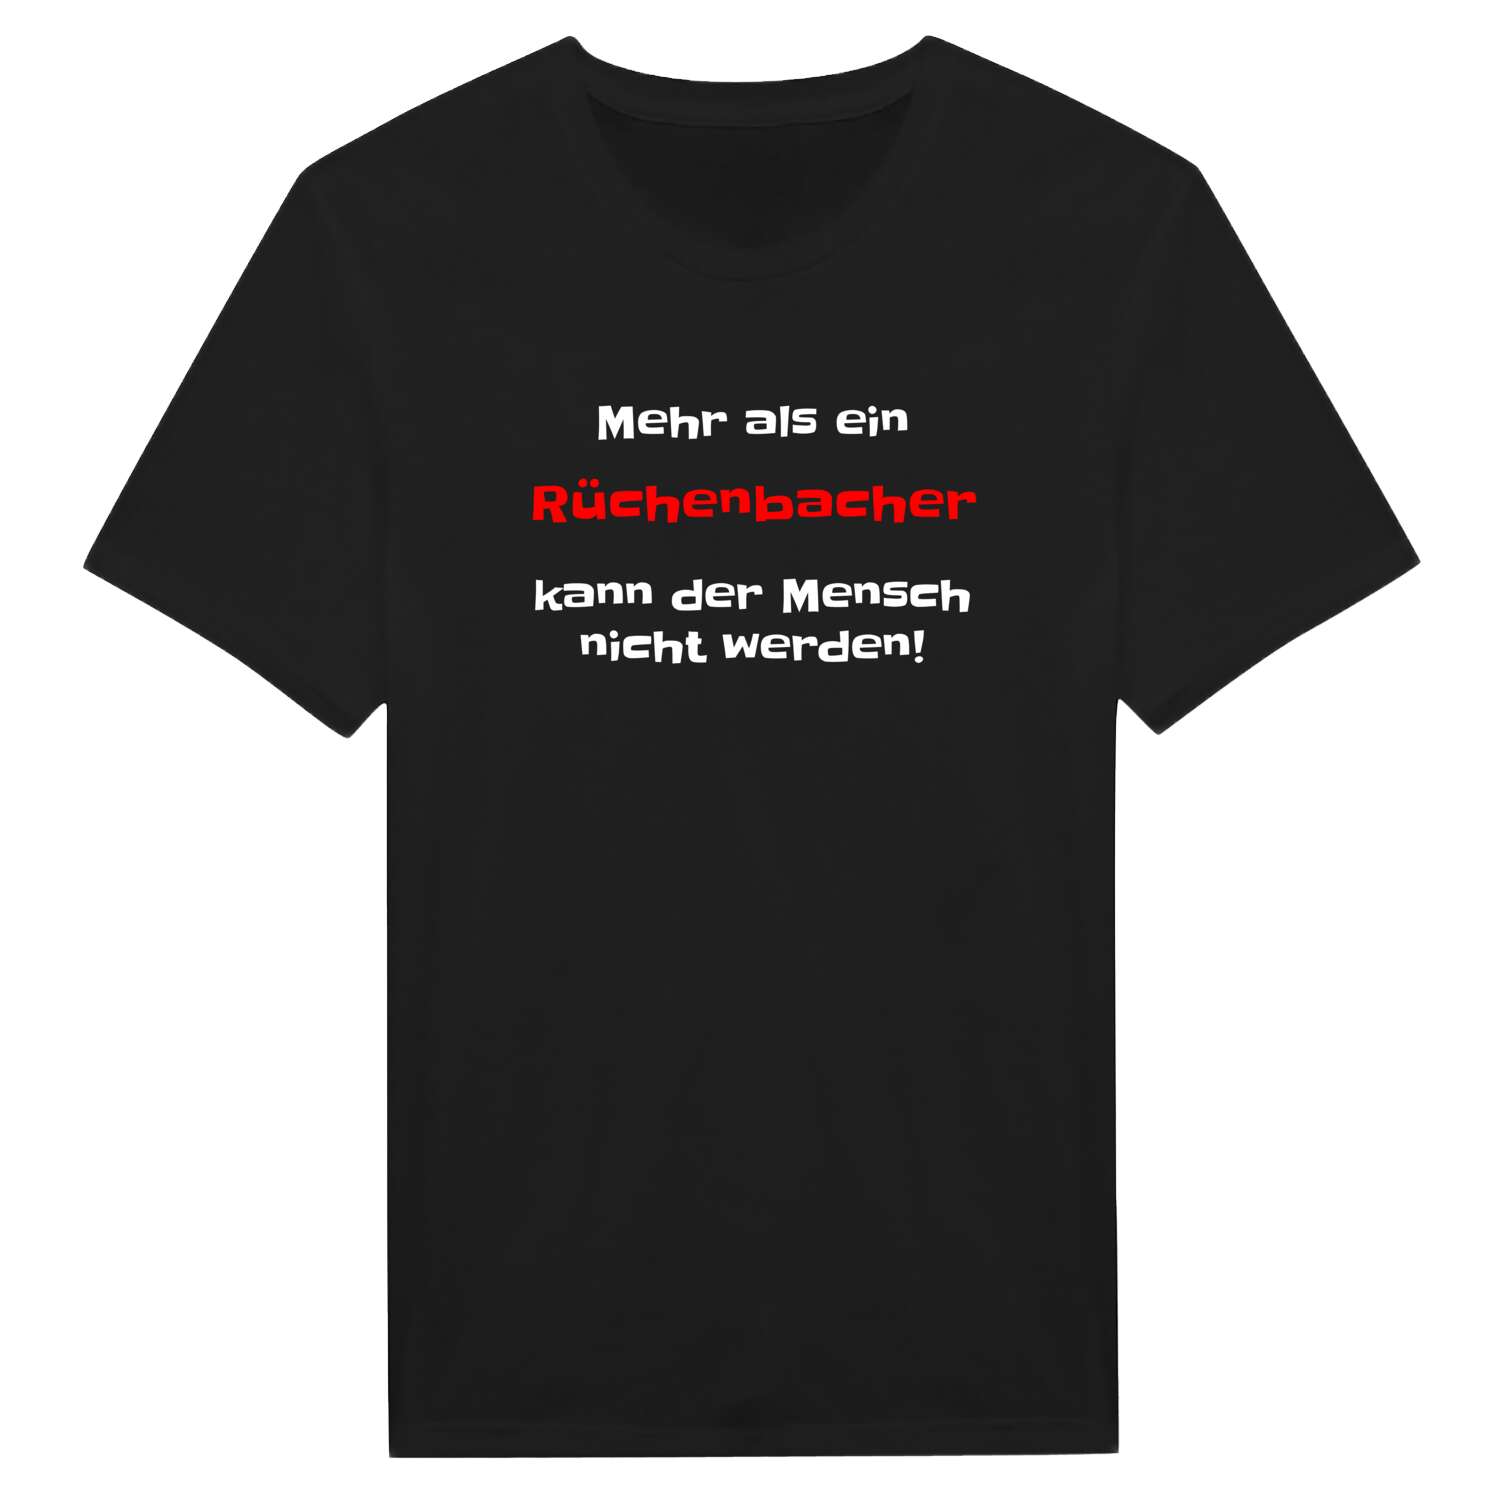 Rüchenbach T-Shirt »Mehr als ein«